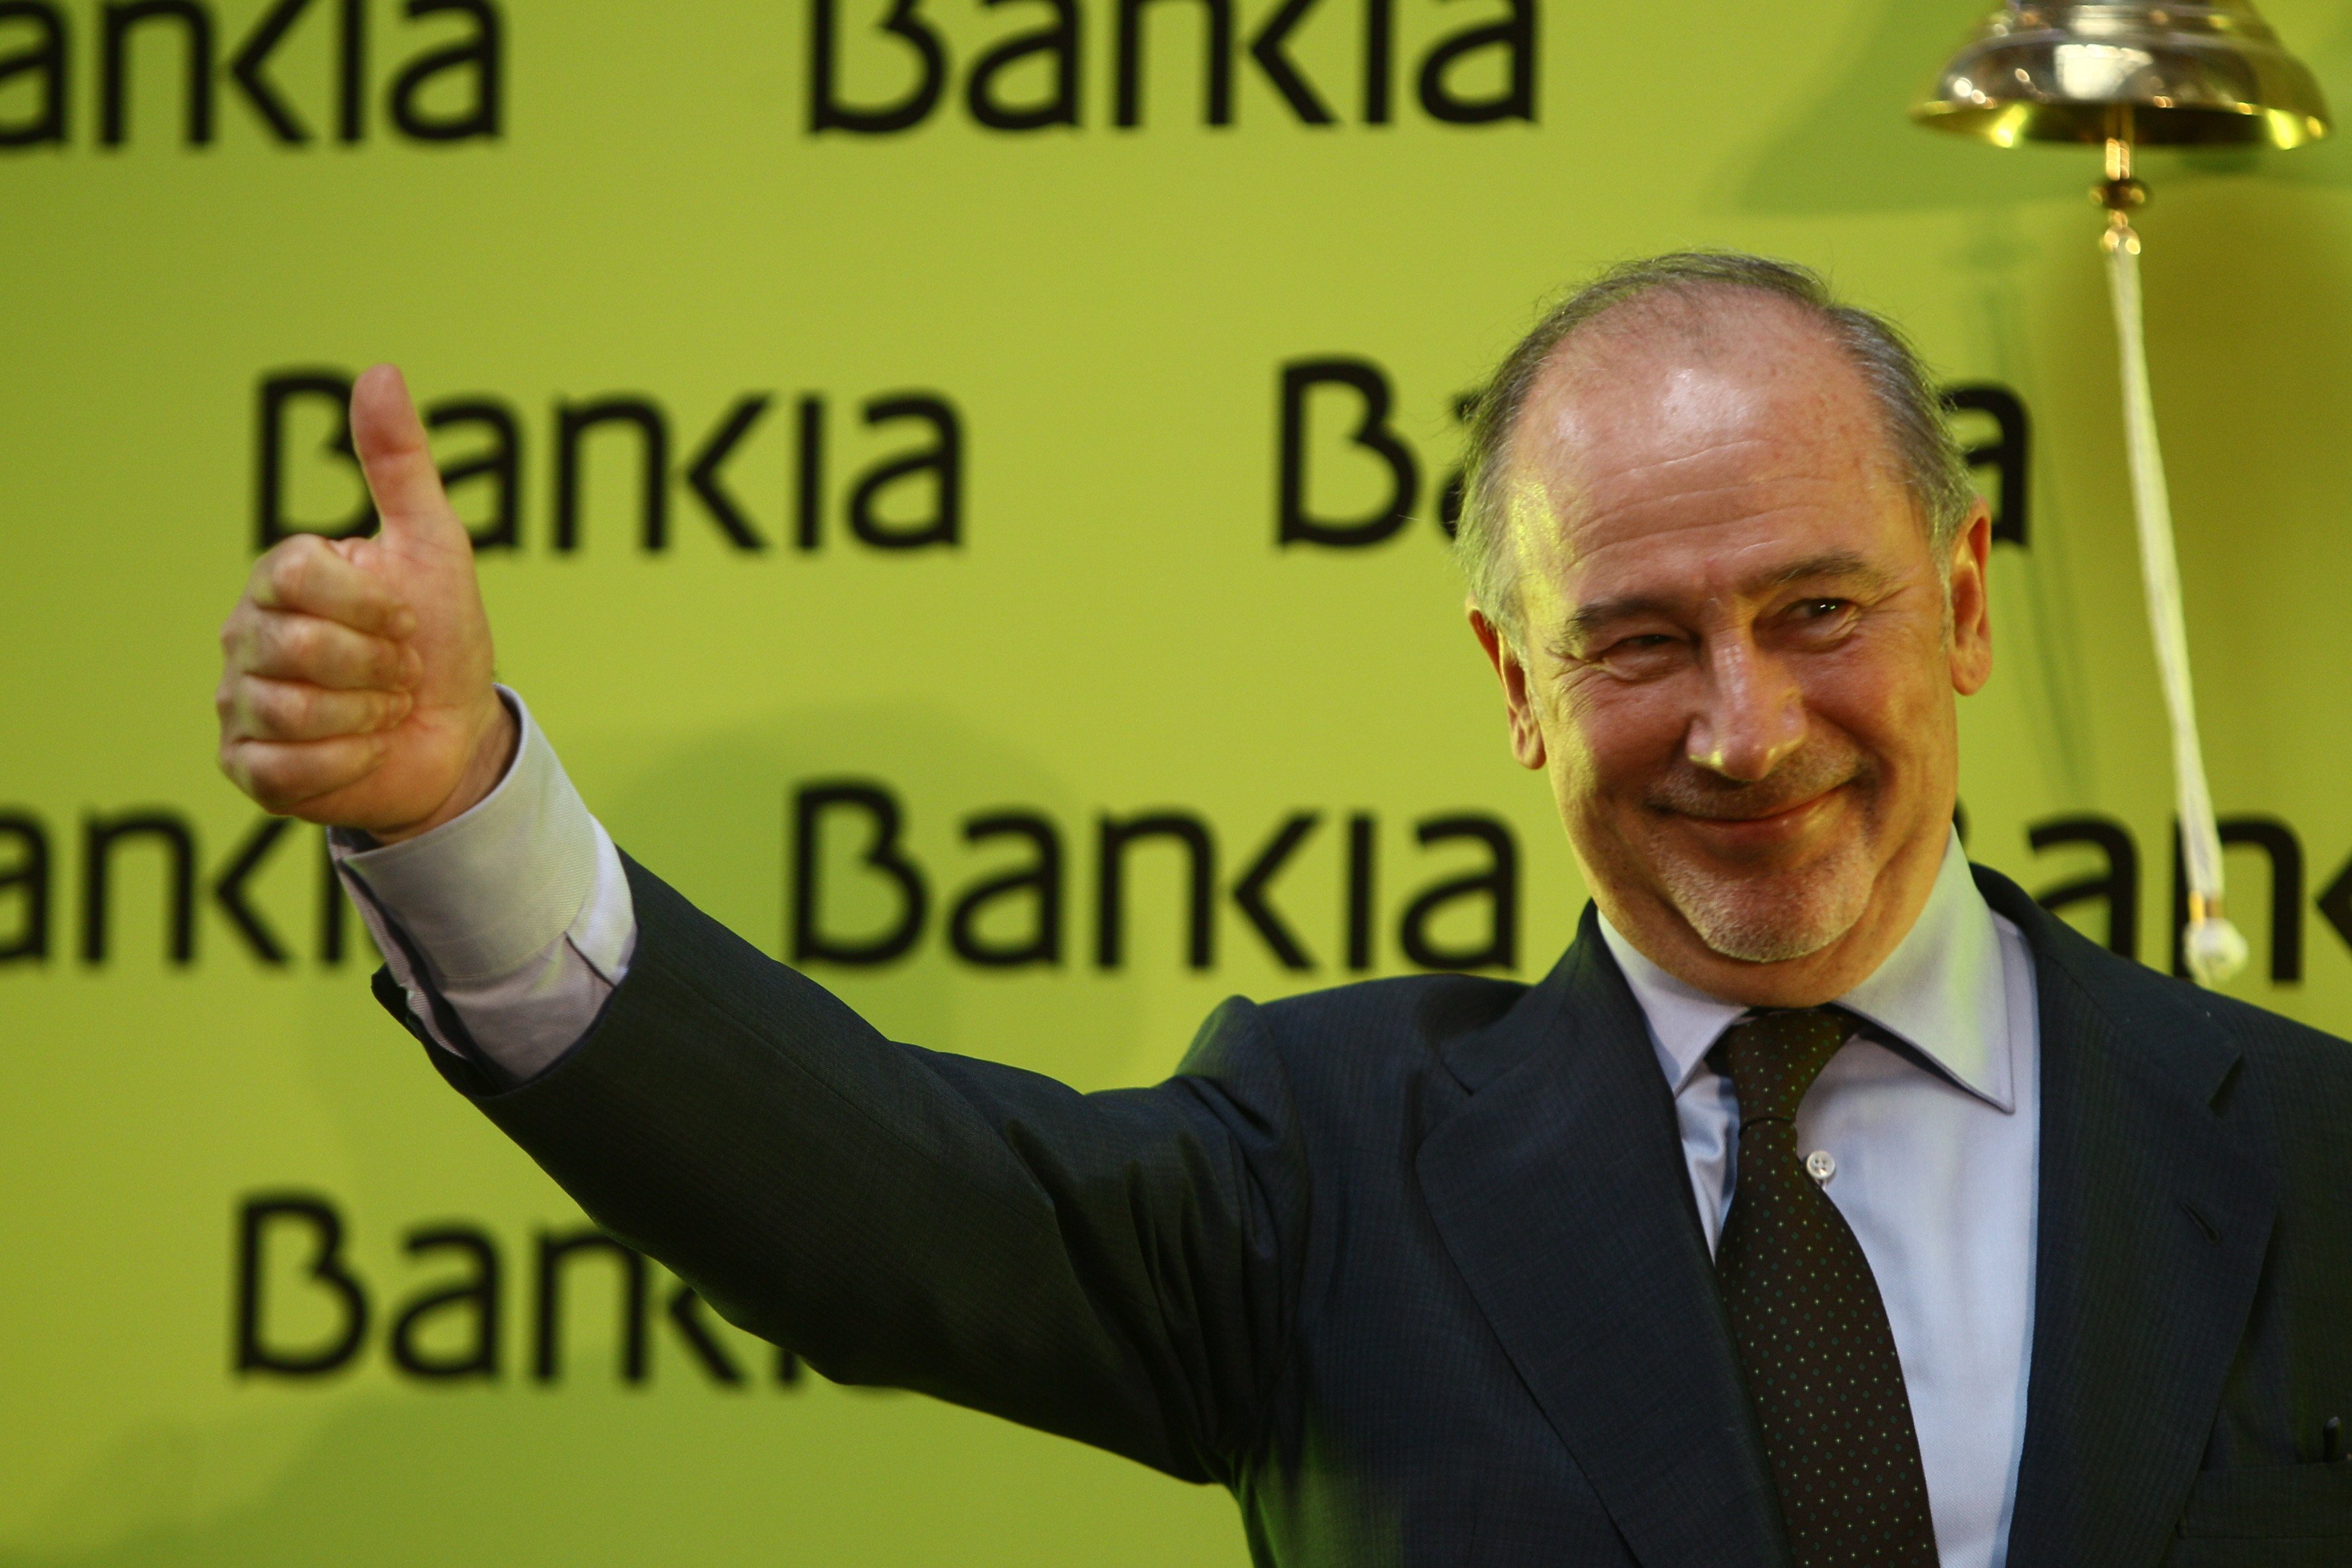 Portades que s’alegren per la impunitat en el cas Bankia